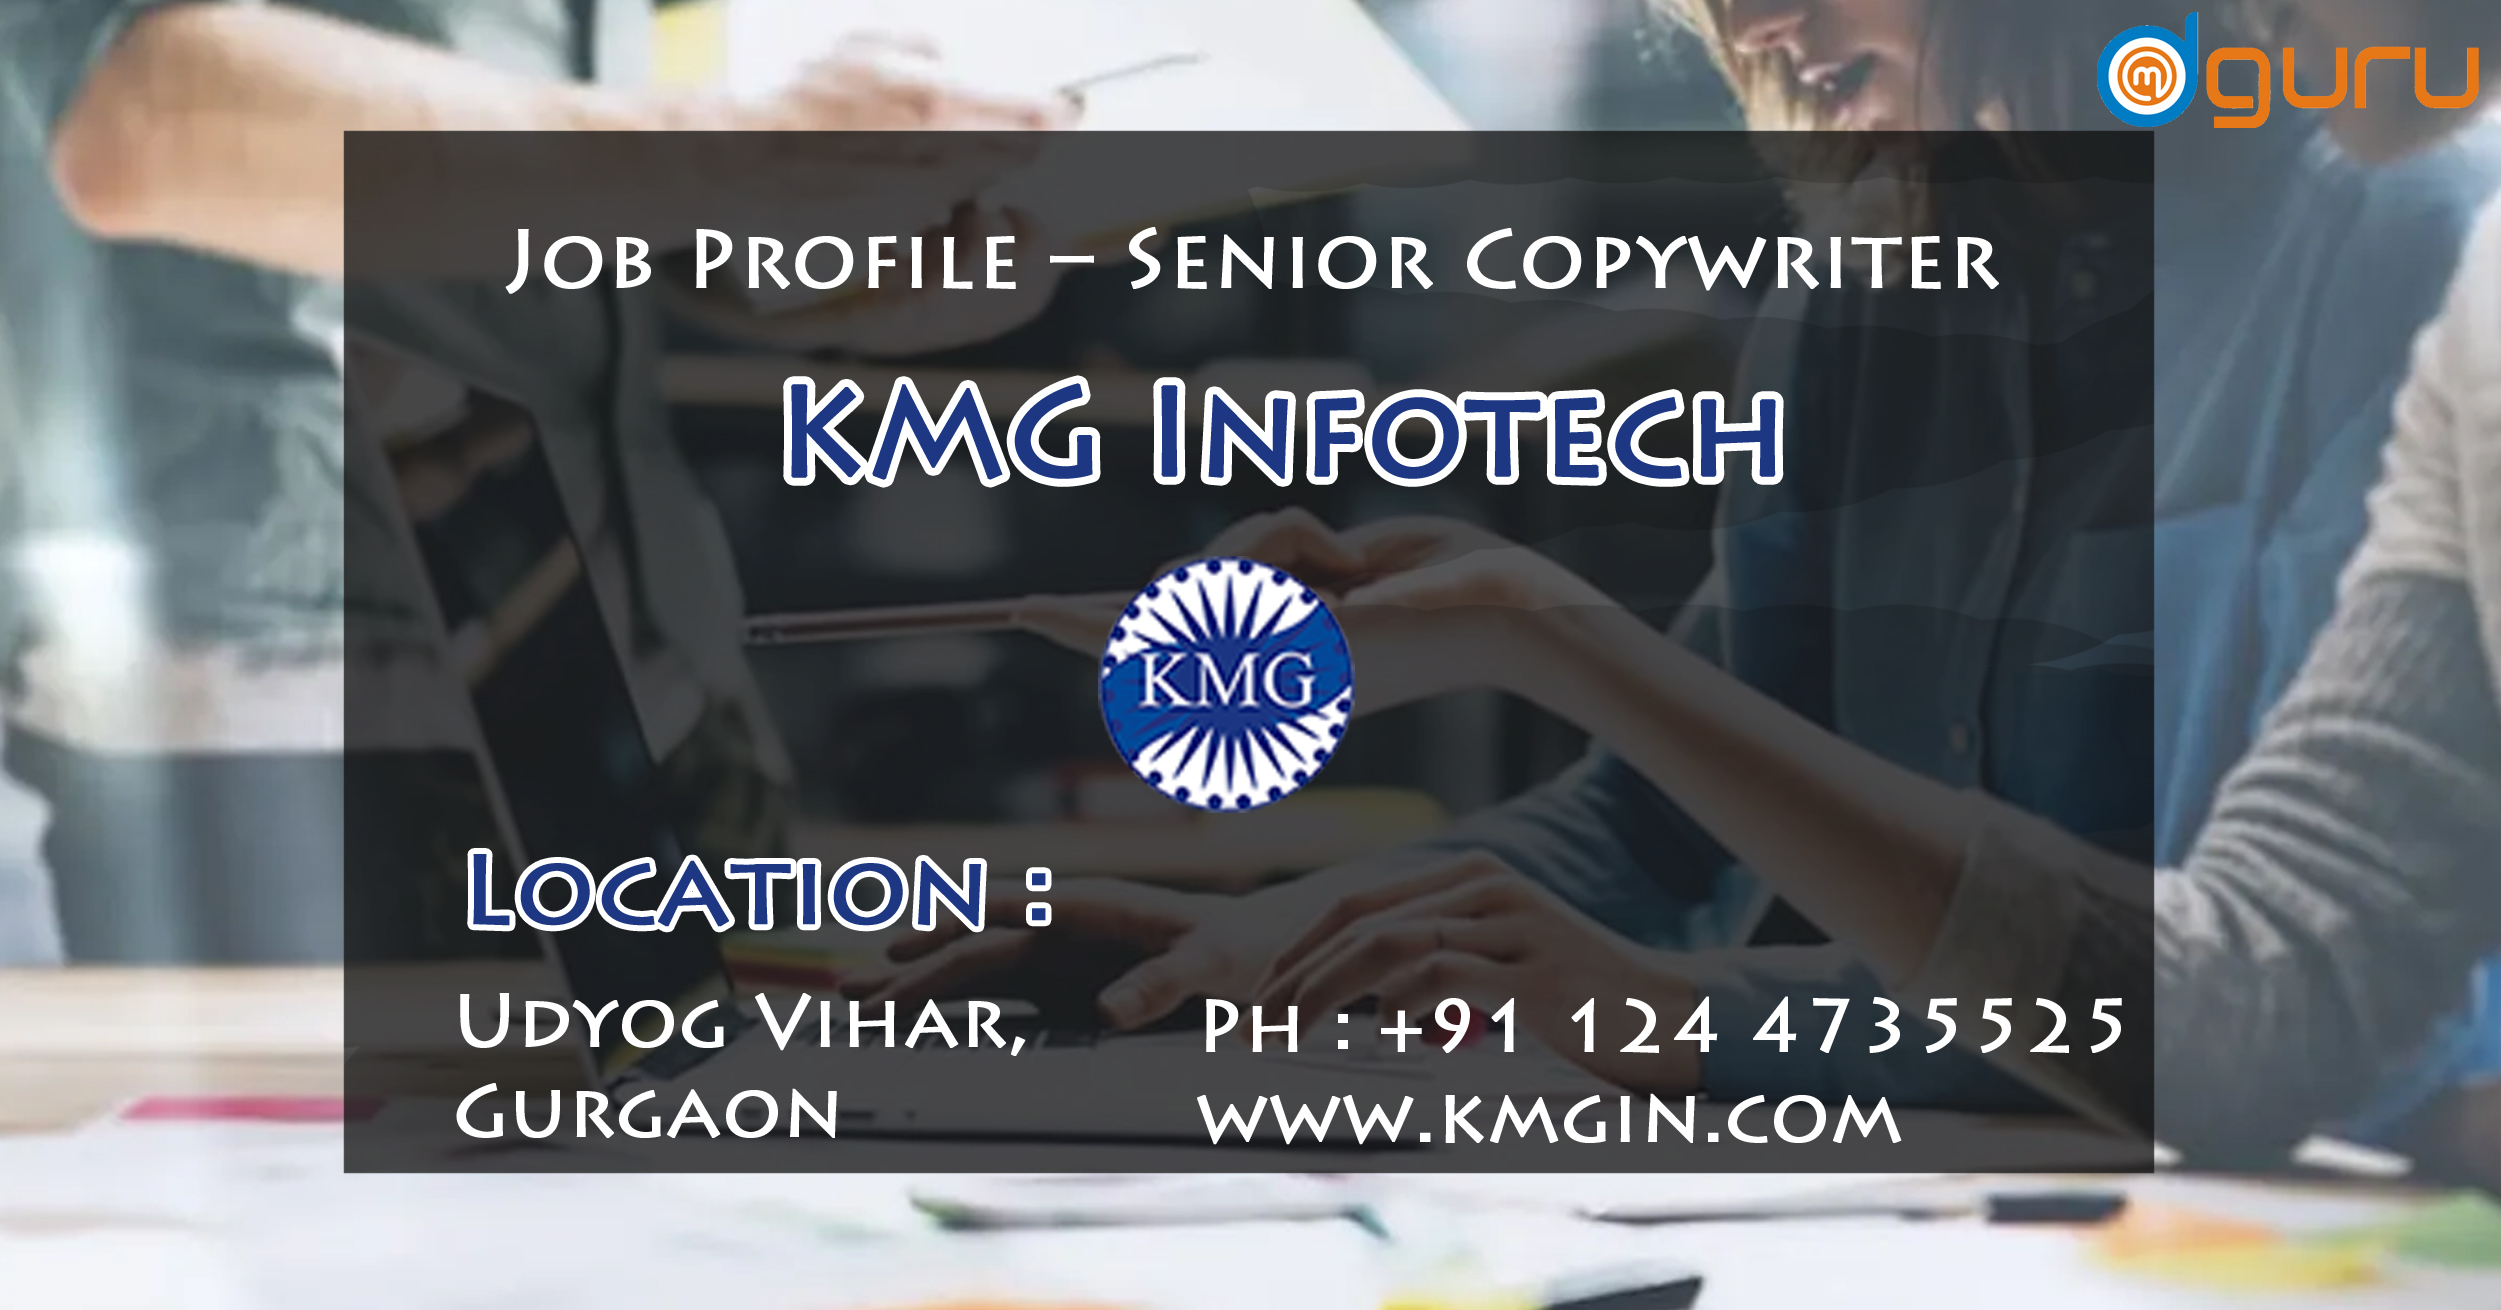 Senior Copywriter Job at KMG Infotech Gurgaon, India